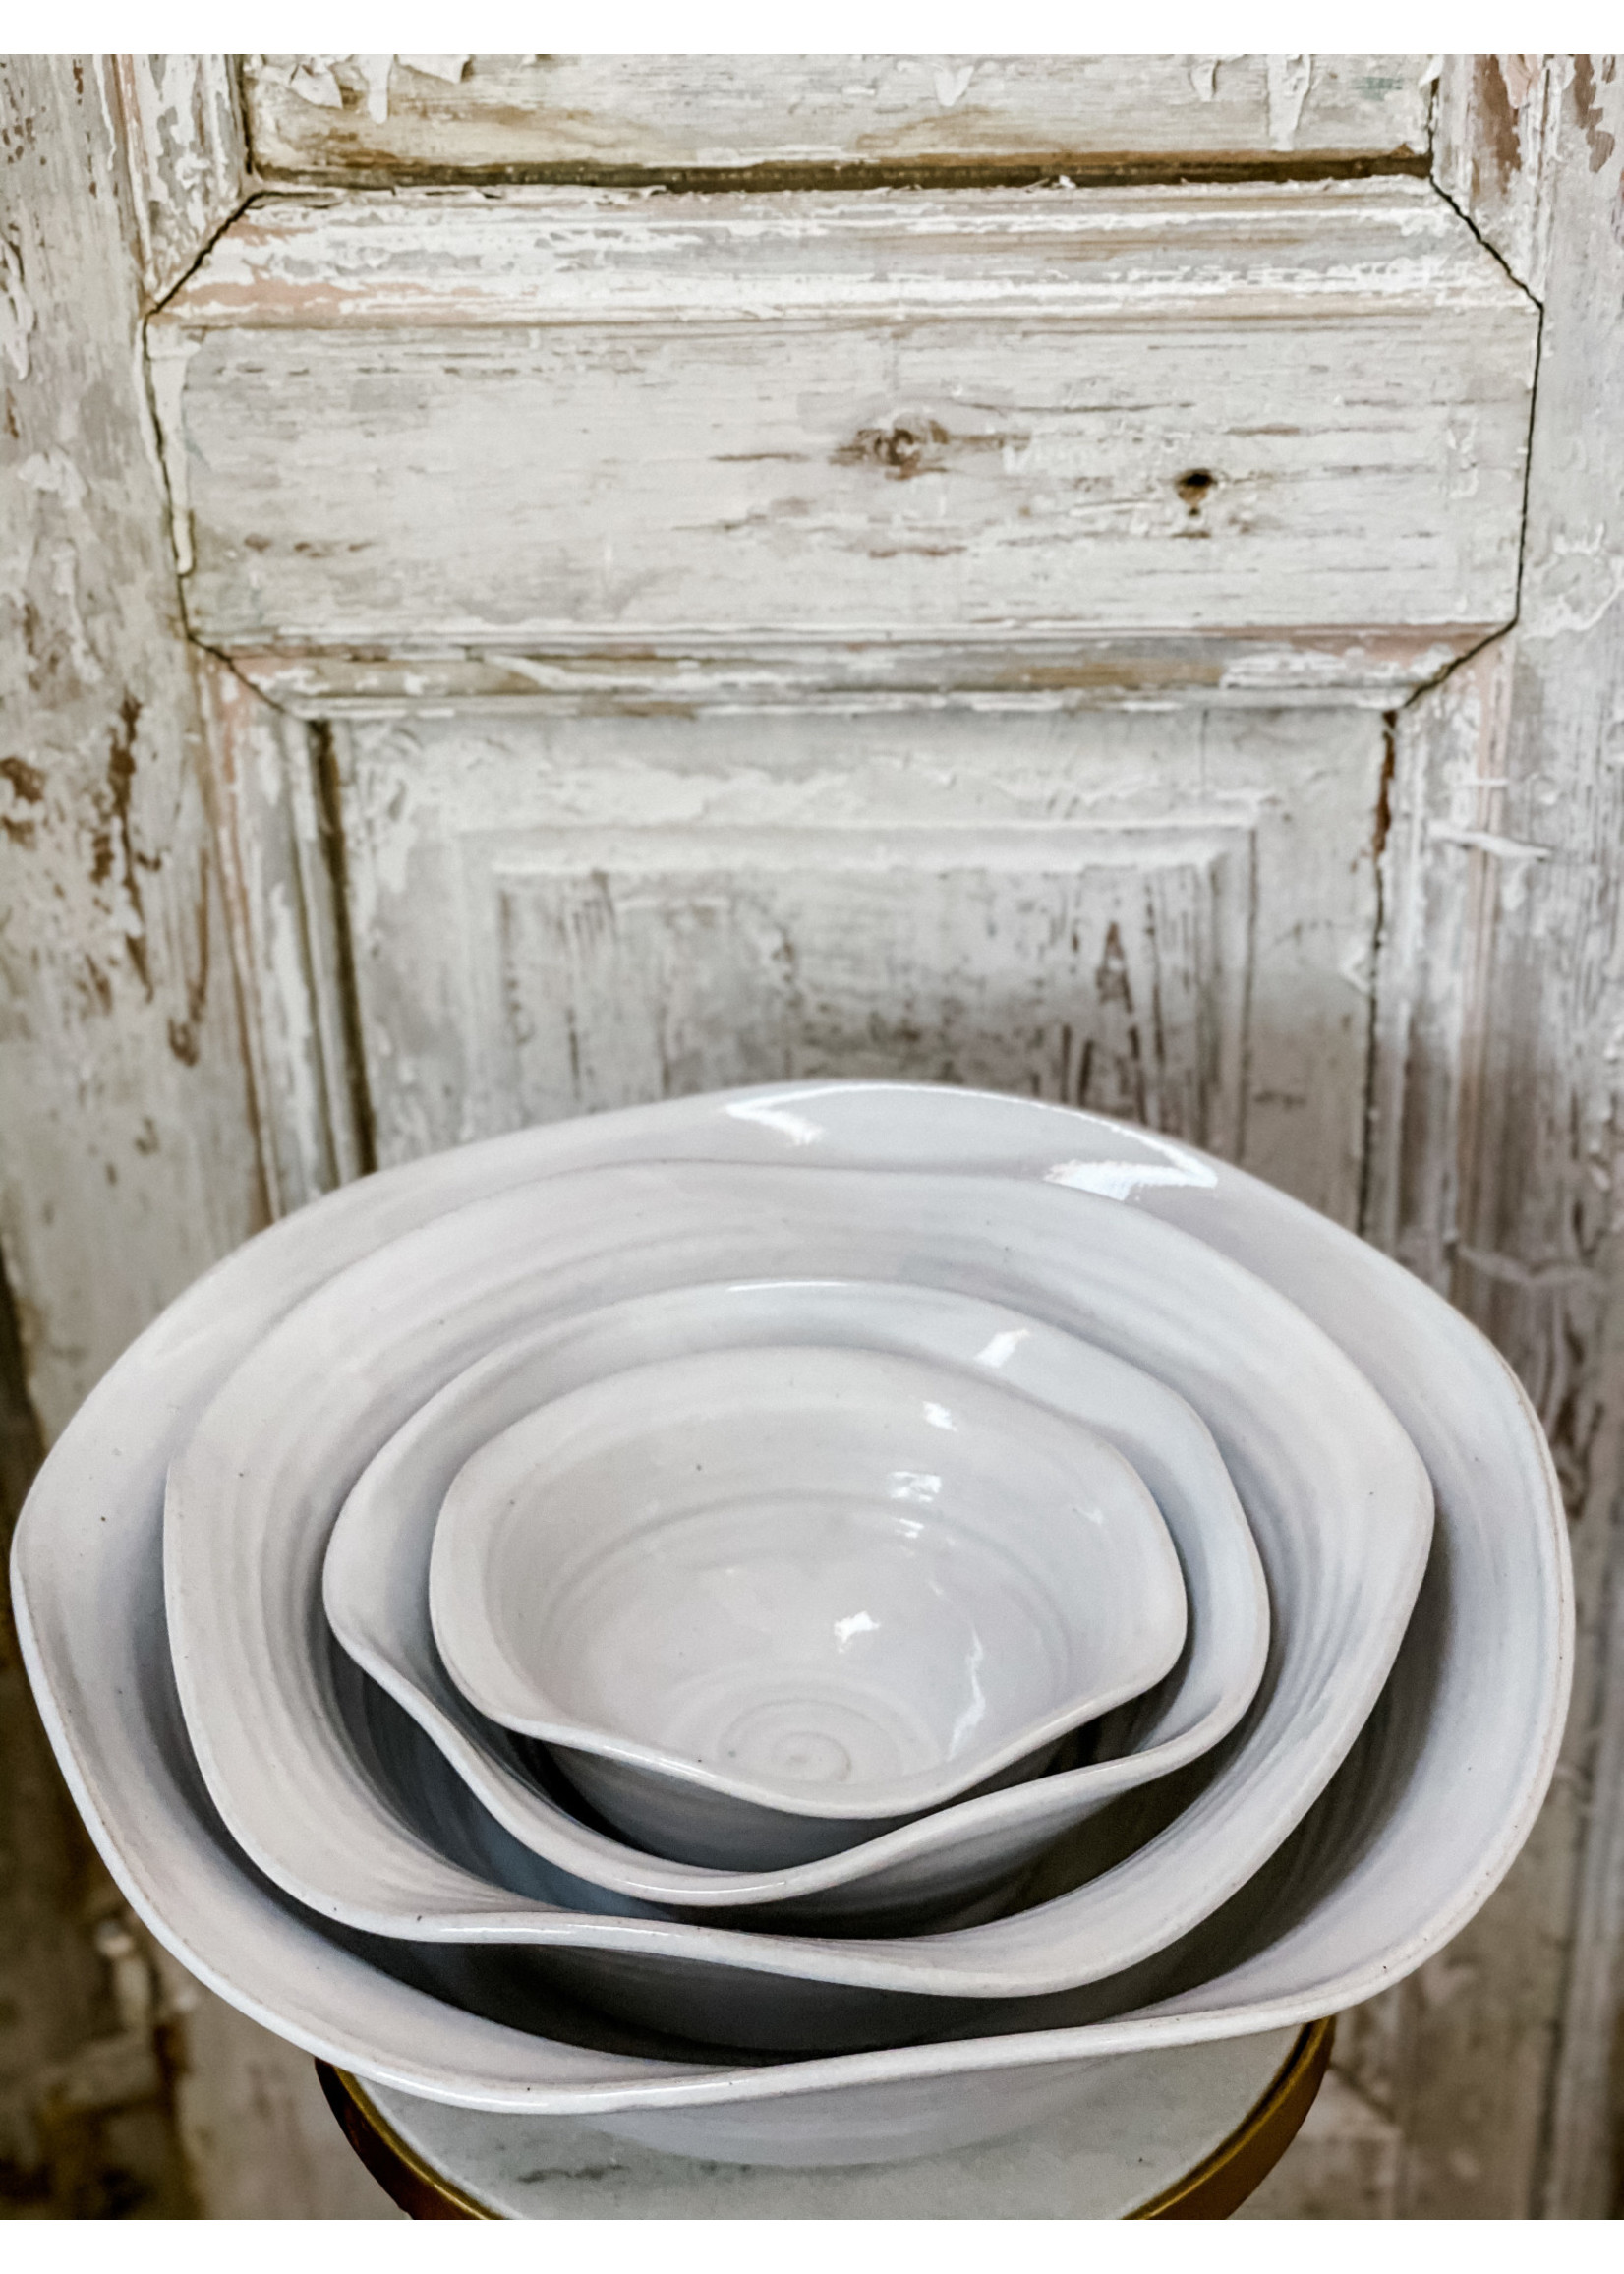 Farmhouse Pottery Windrow Bowl - Medium